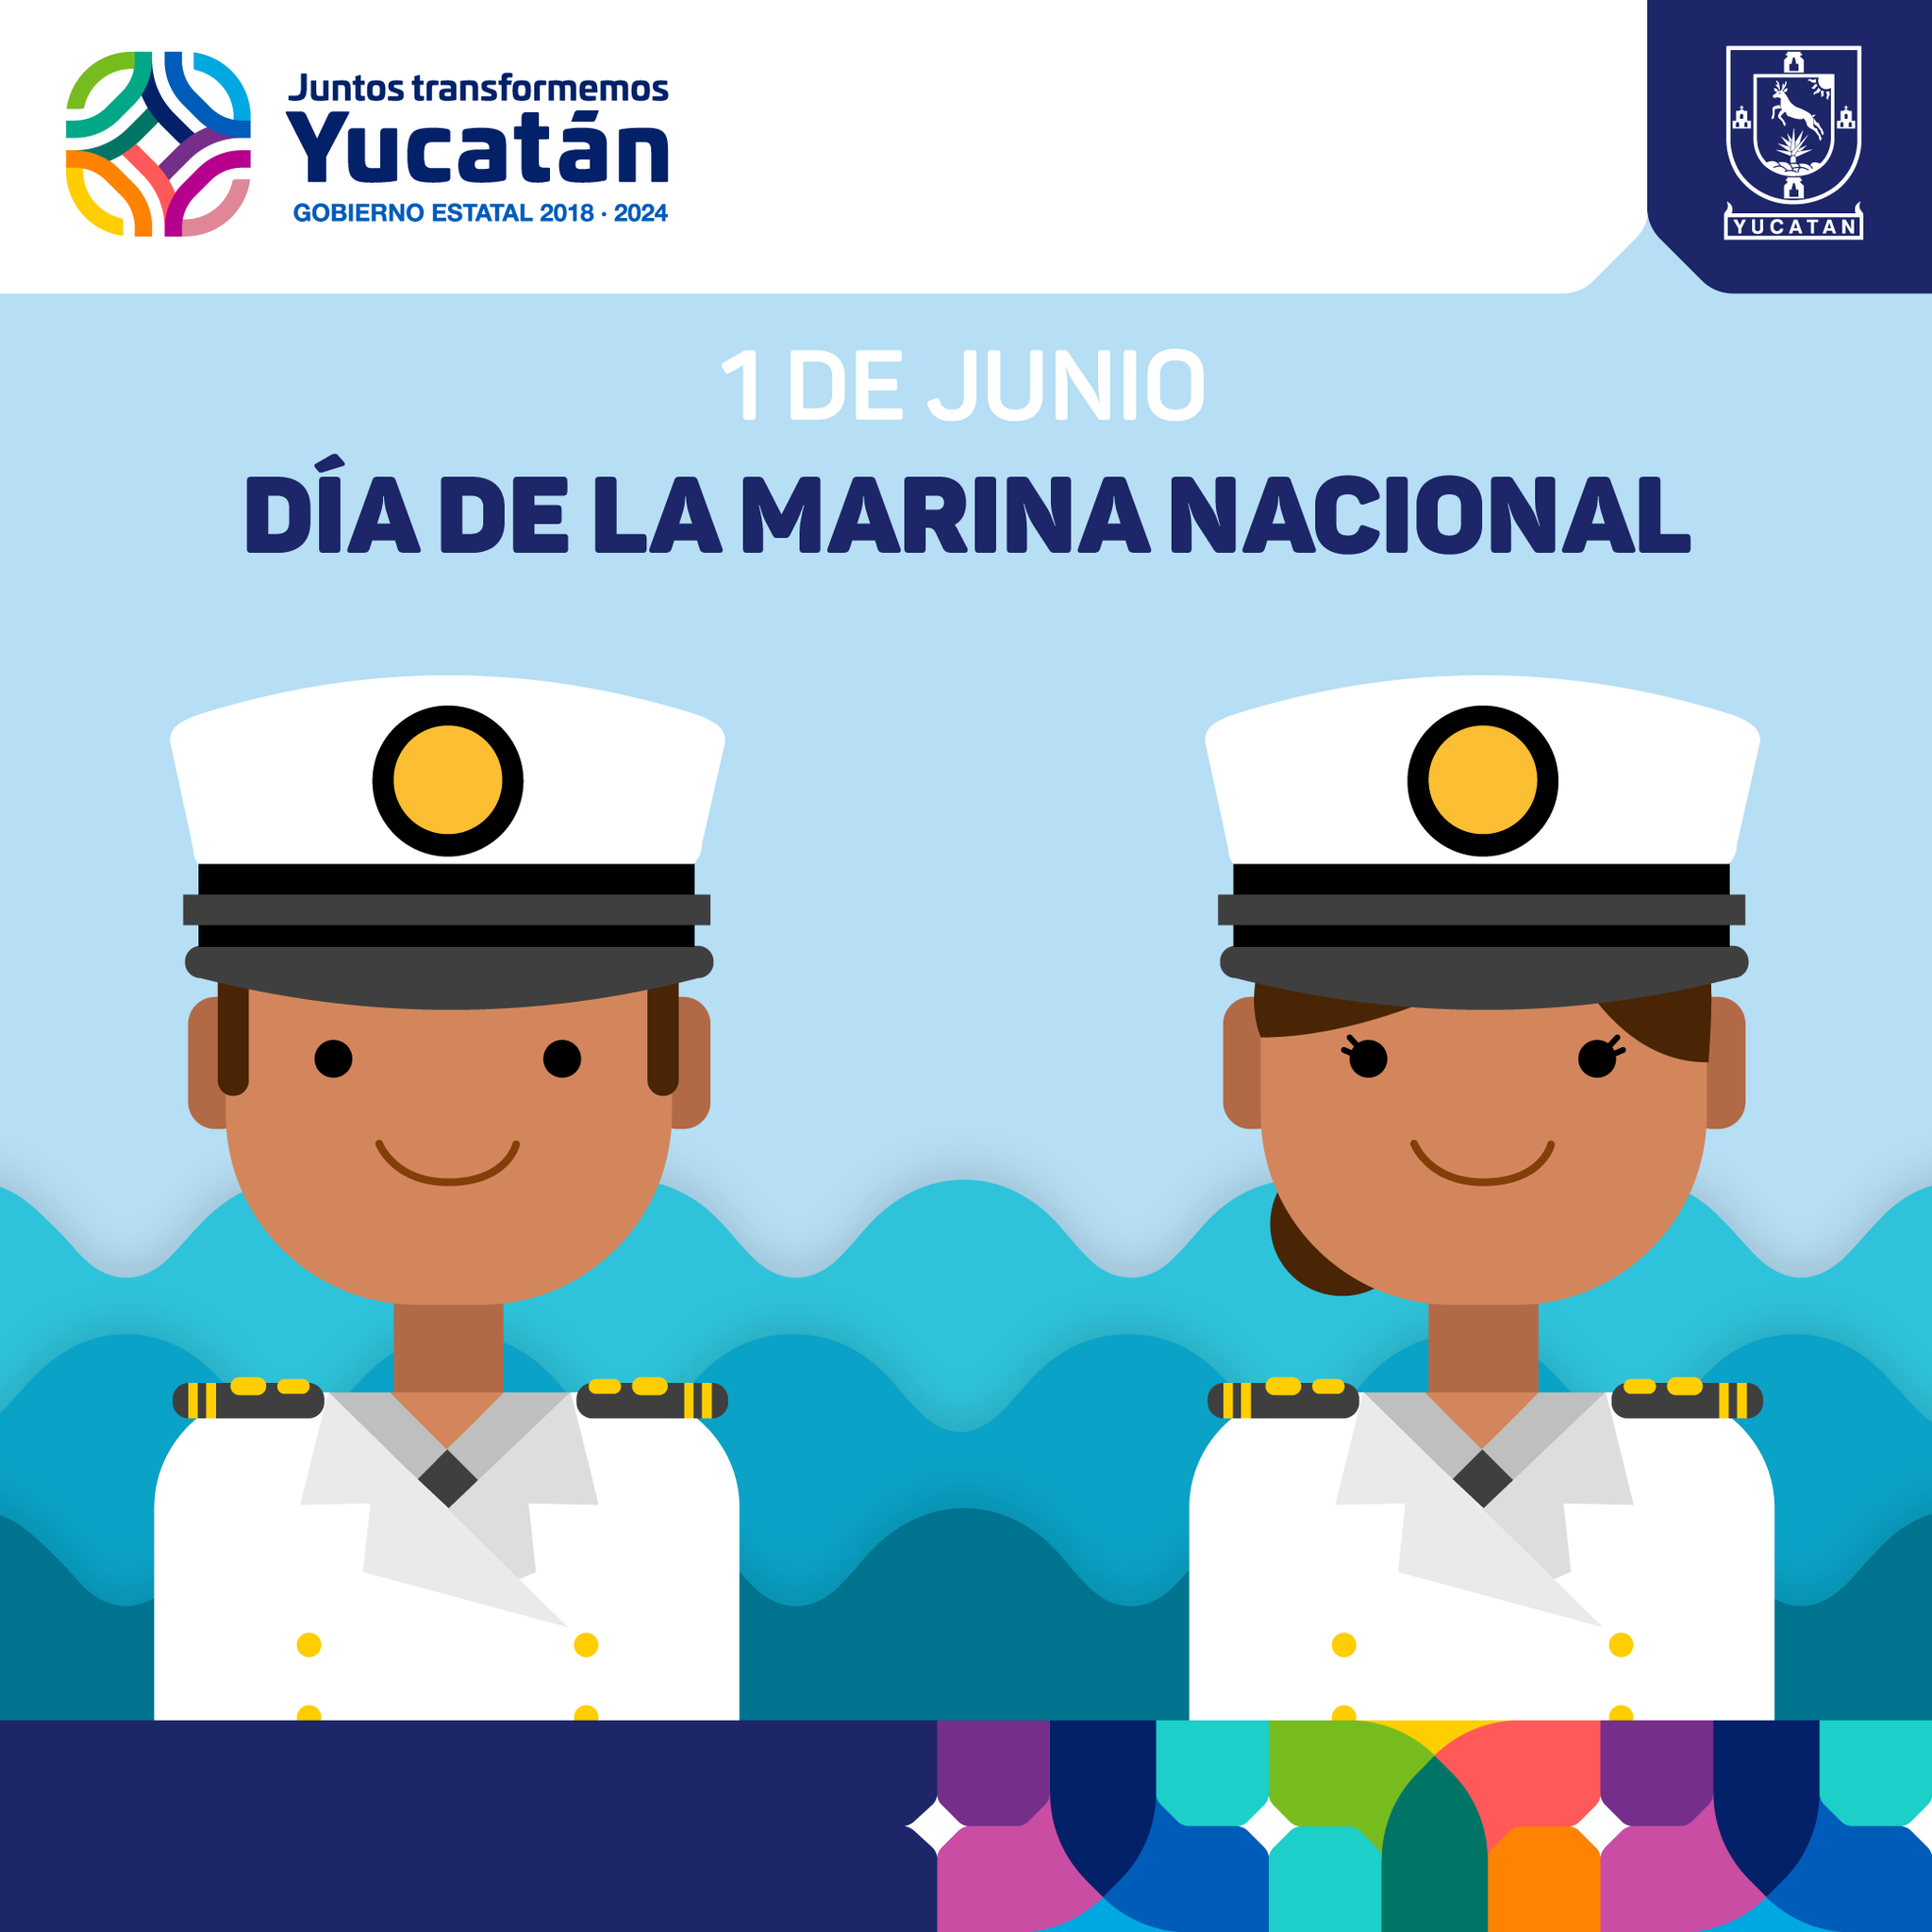 Gobierno de Yucatán on Twitter: 